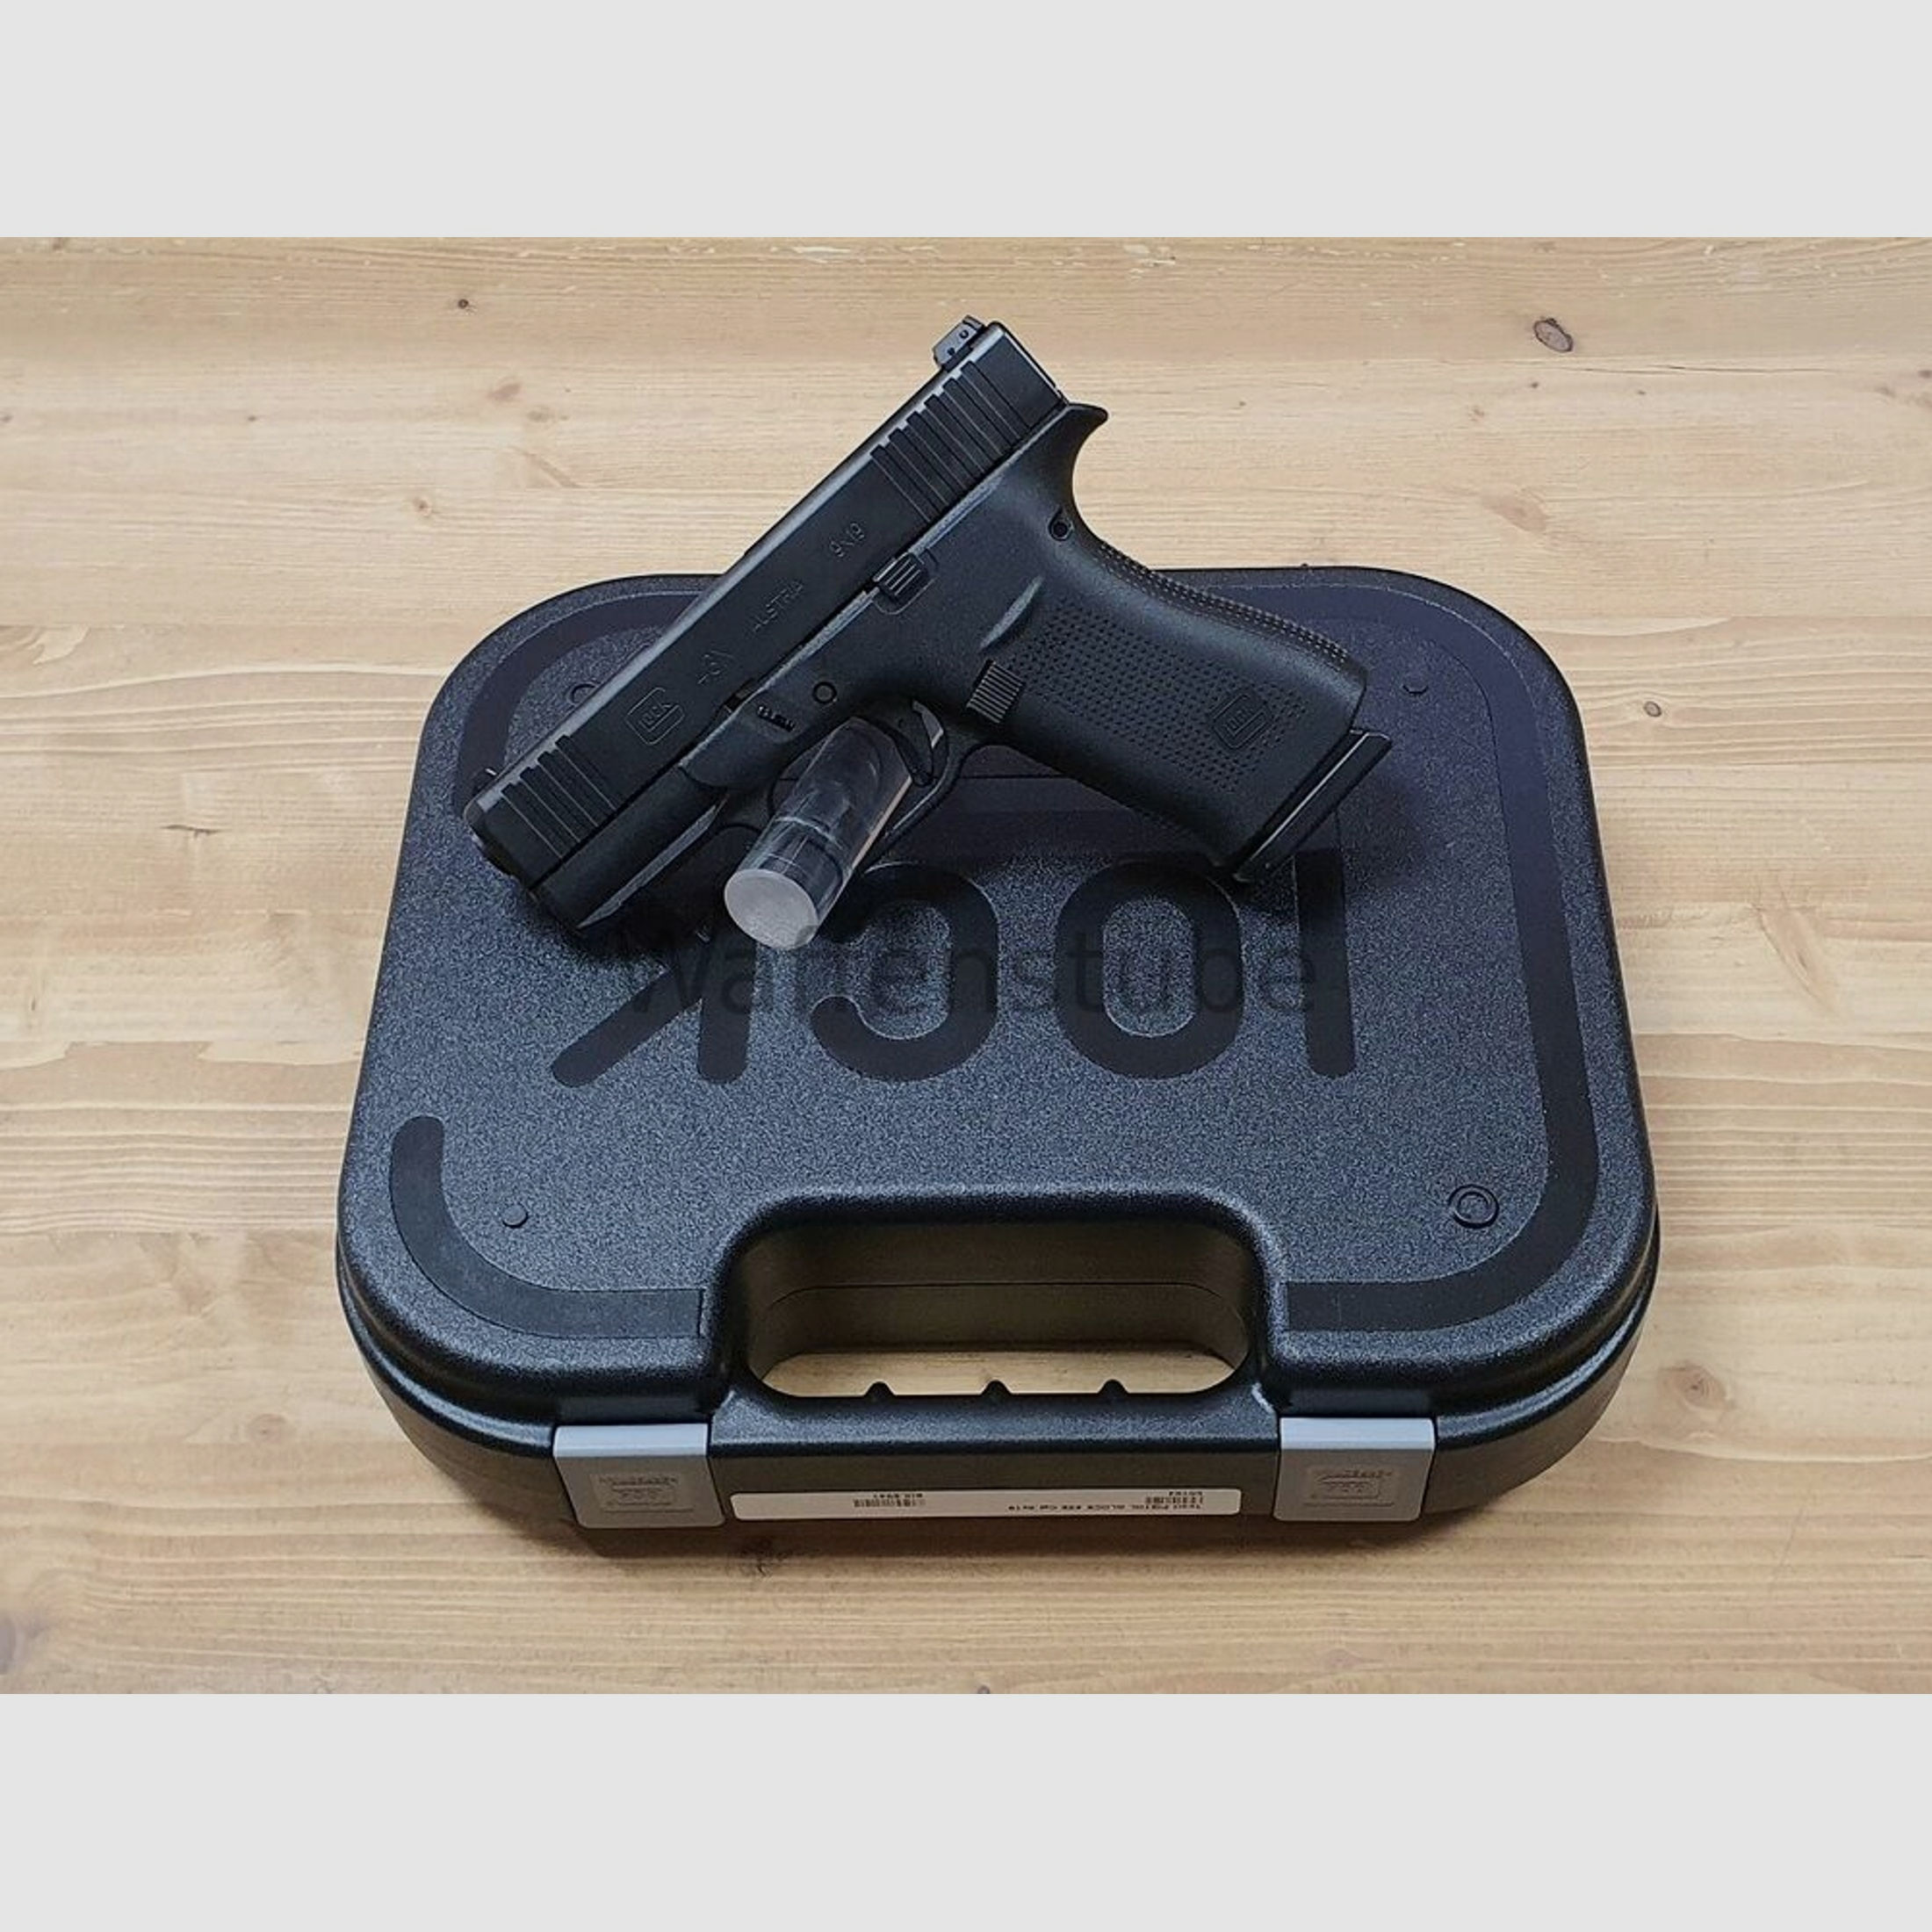 Glock	 43X R FS black